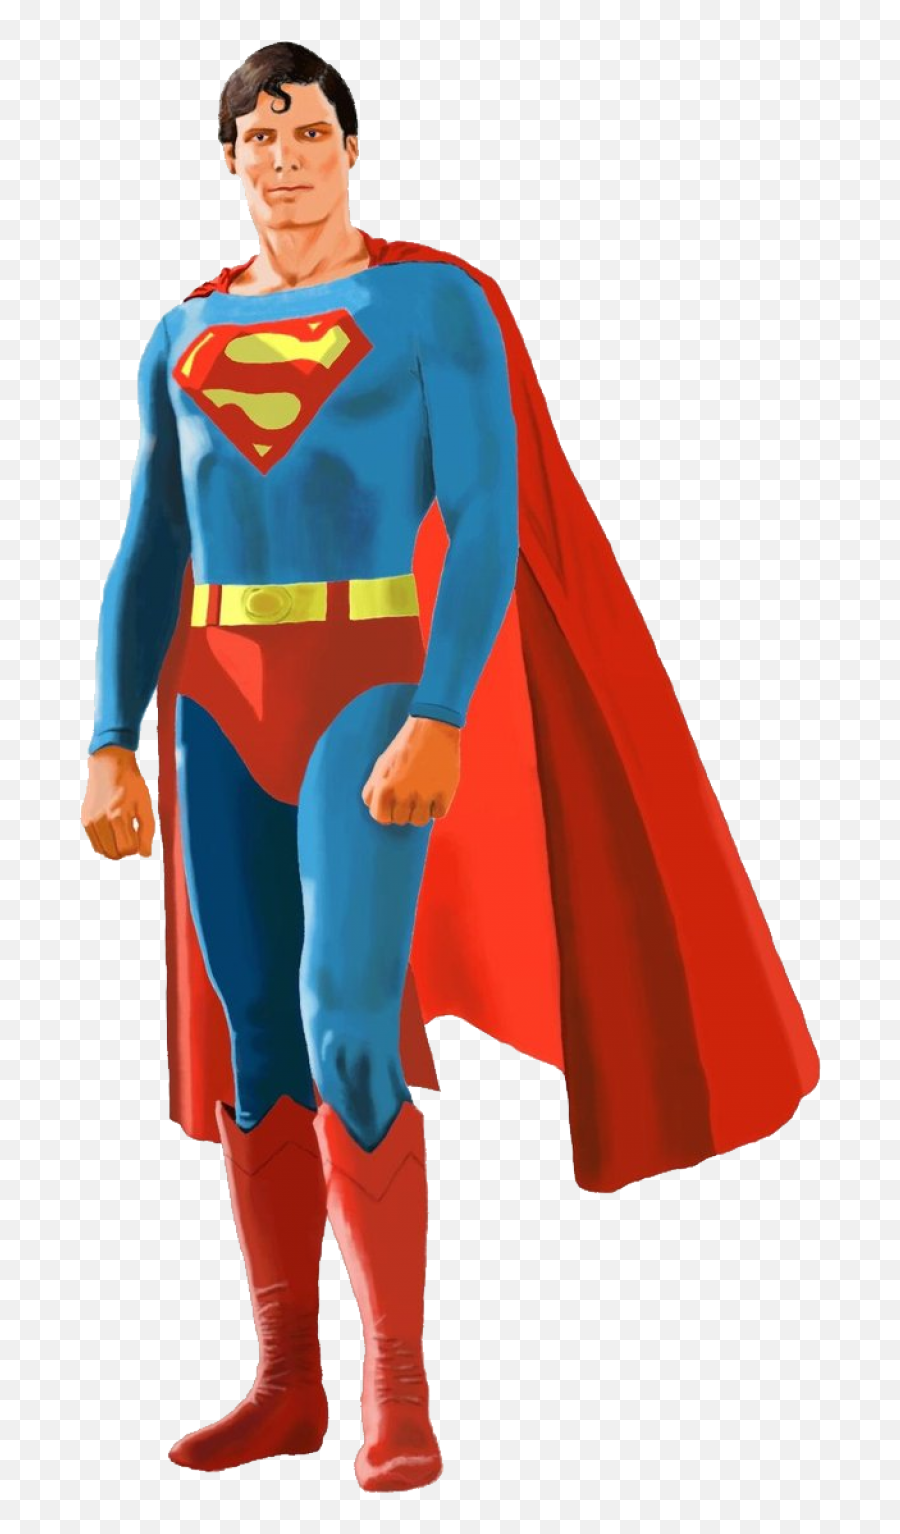 Superman Png Image - Christopher Reeve Superman Artwork,Superman Transparent Background